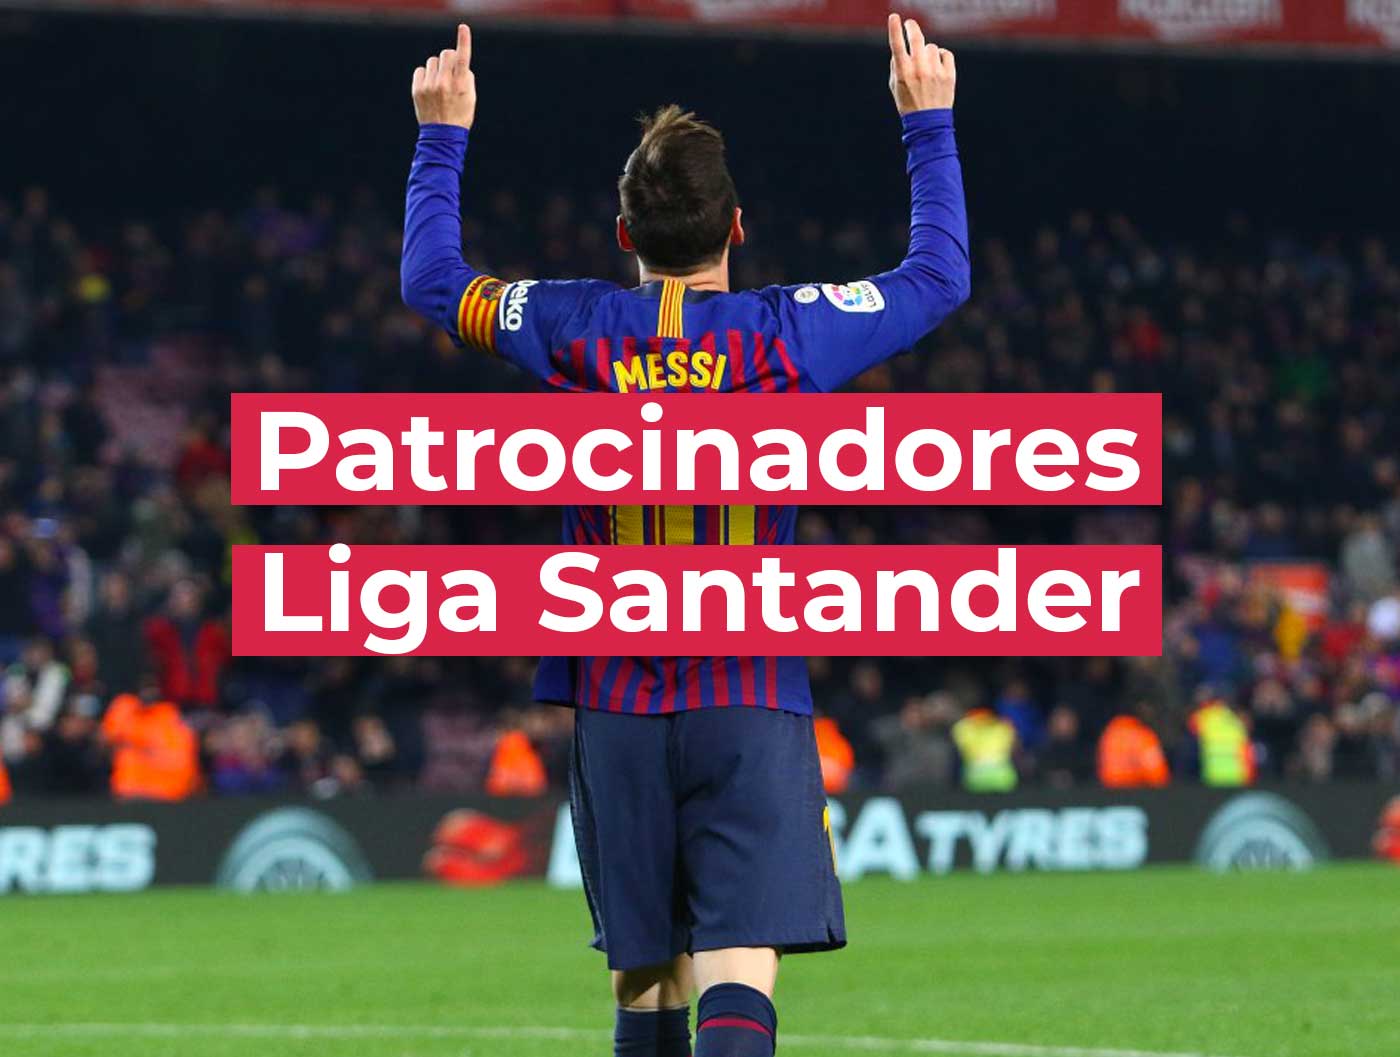 Patrocinadores-Santander, patrocinadores de la liga